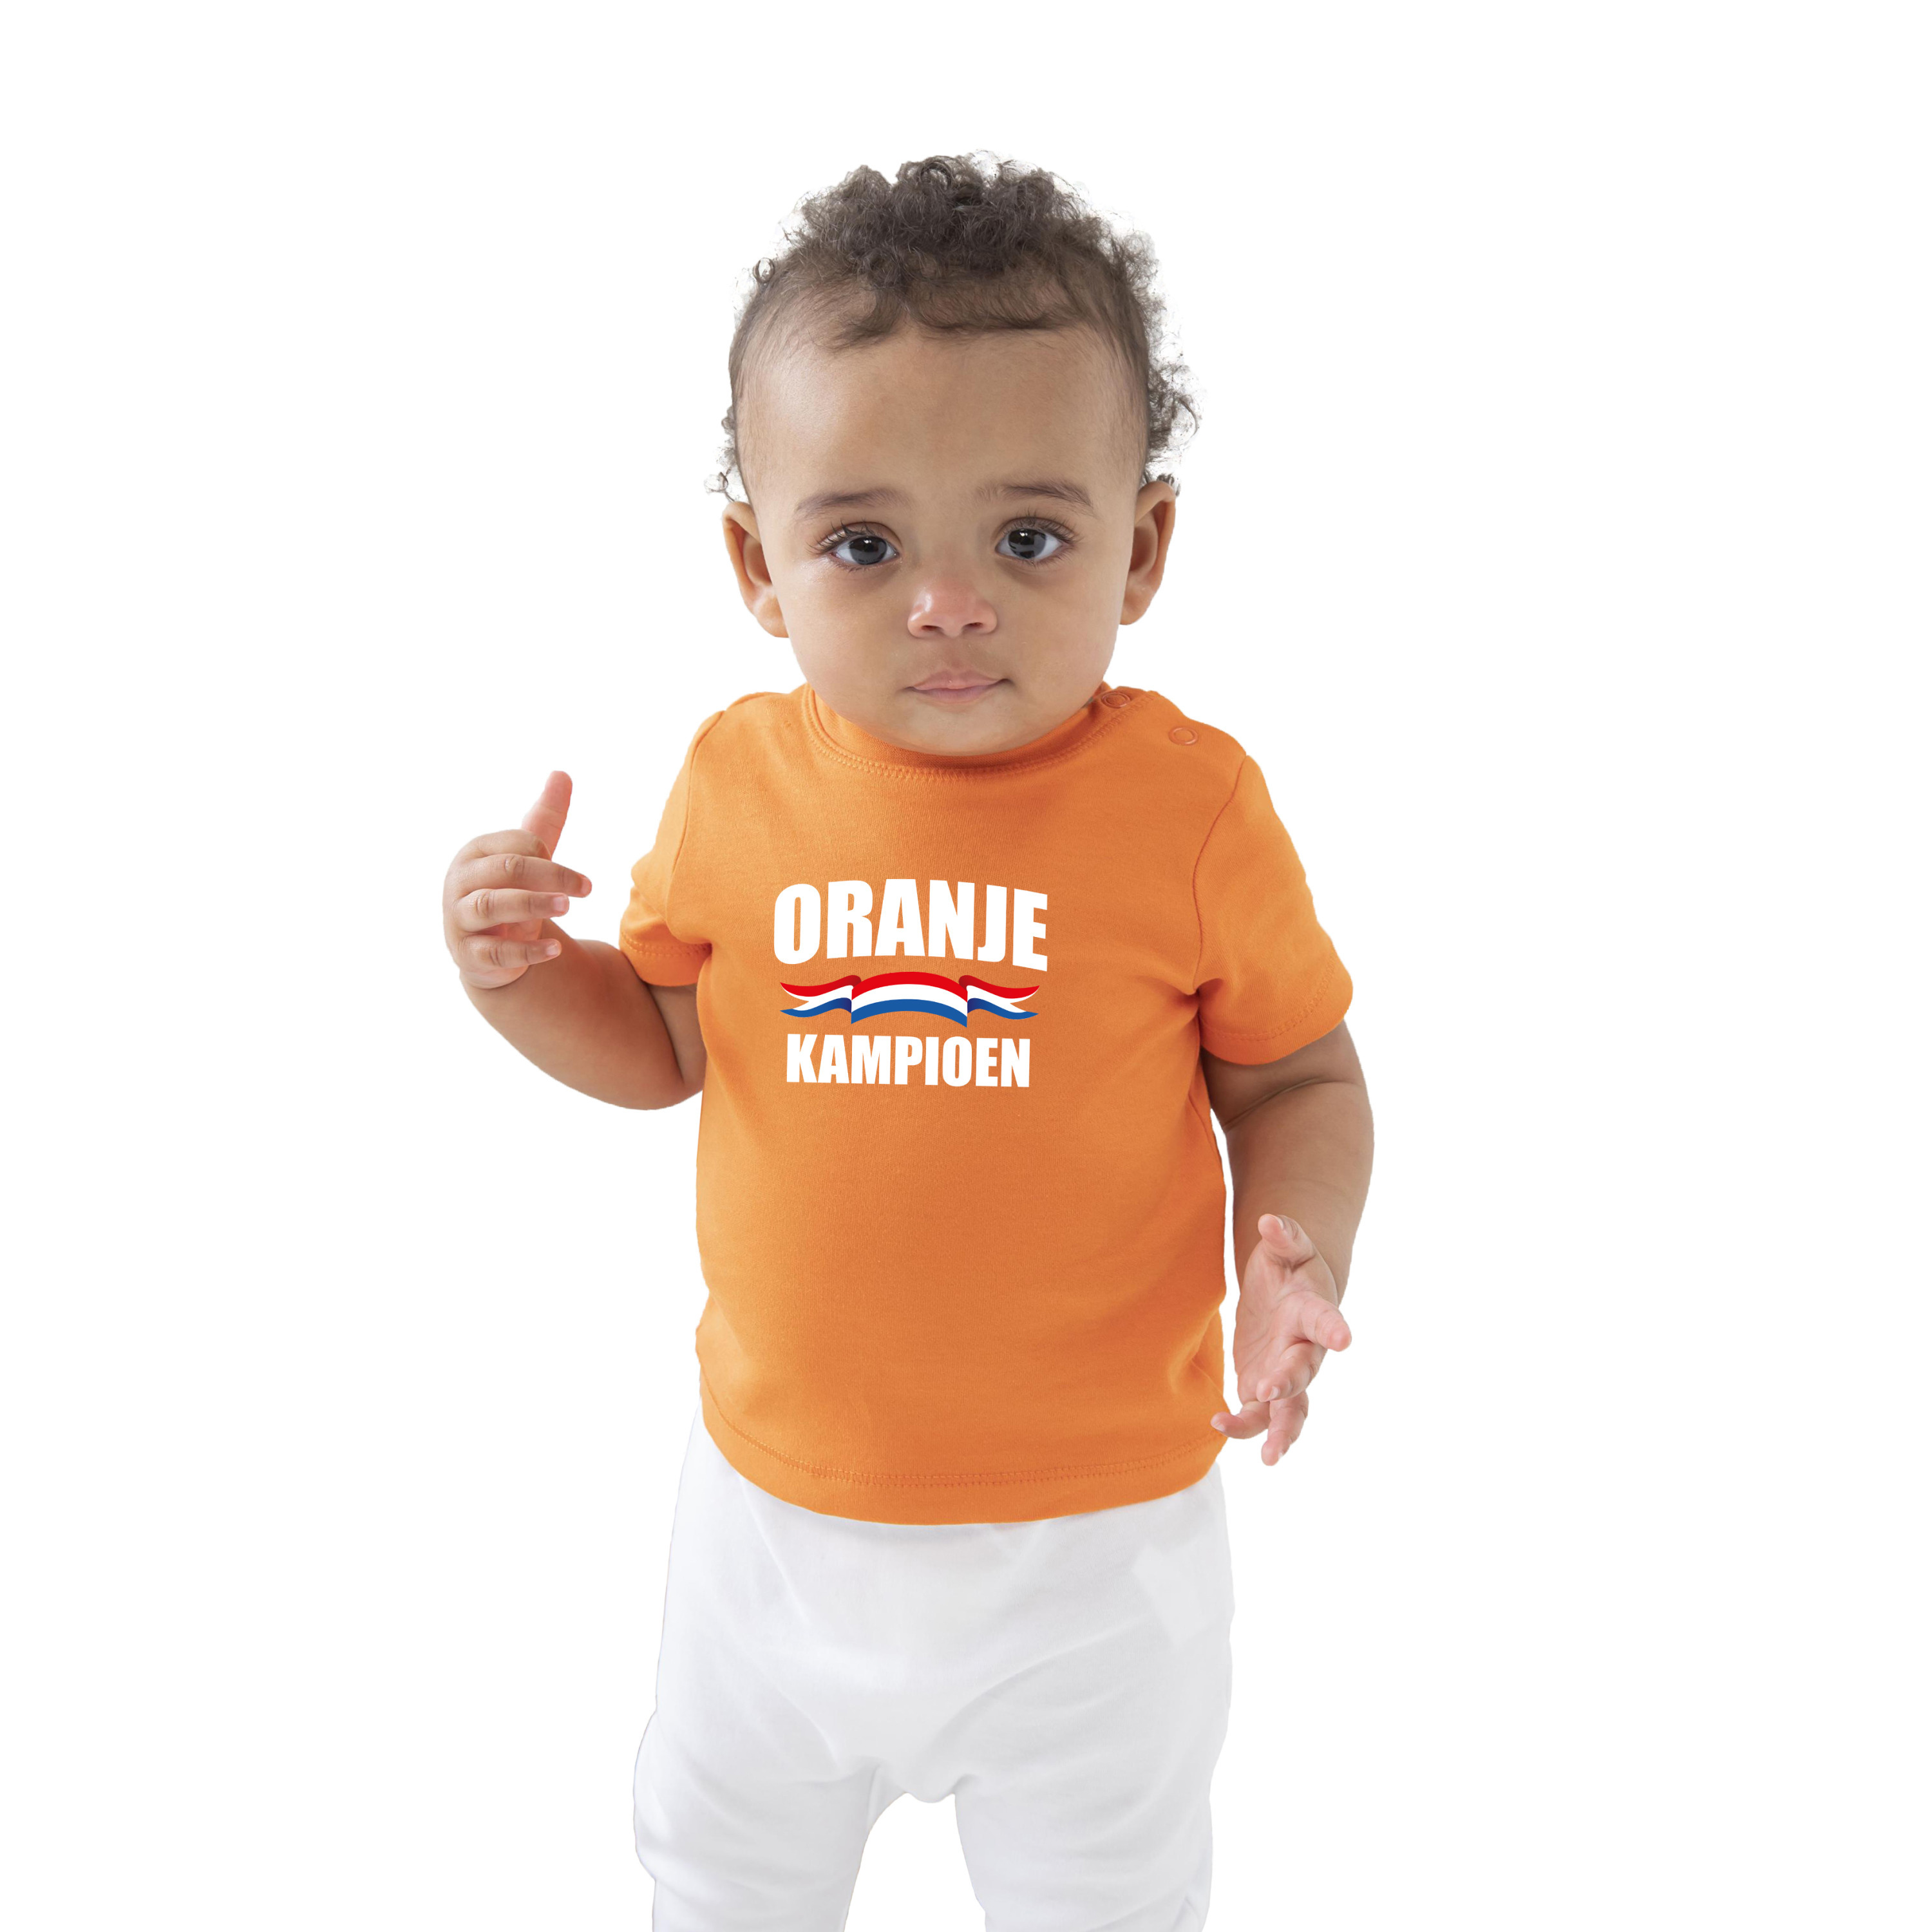 Oranje kampioen t-shirt voor baby-peuter Holland-Nederland supporter